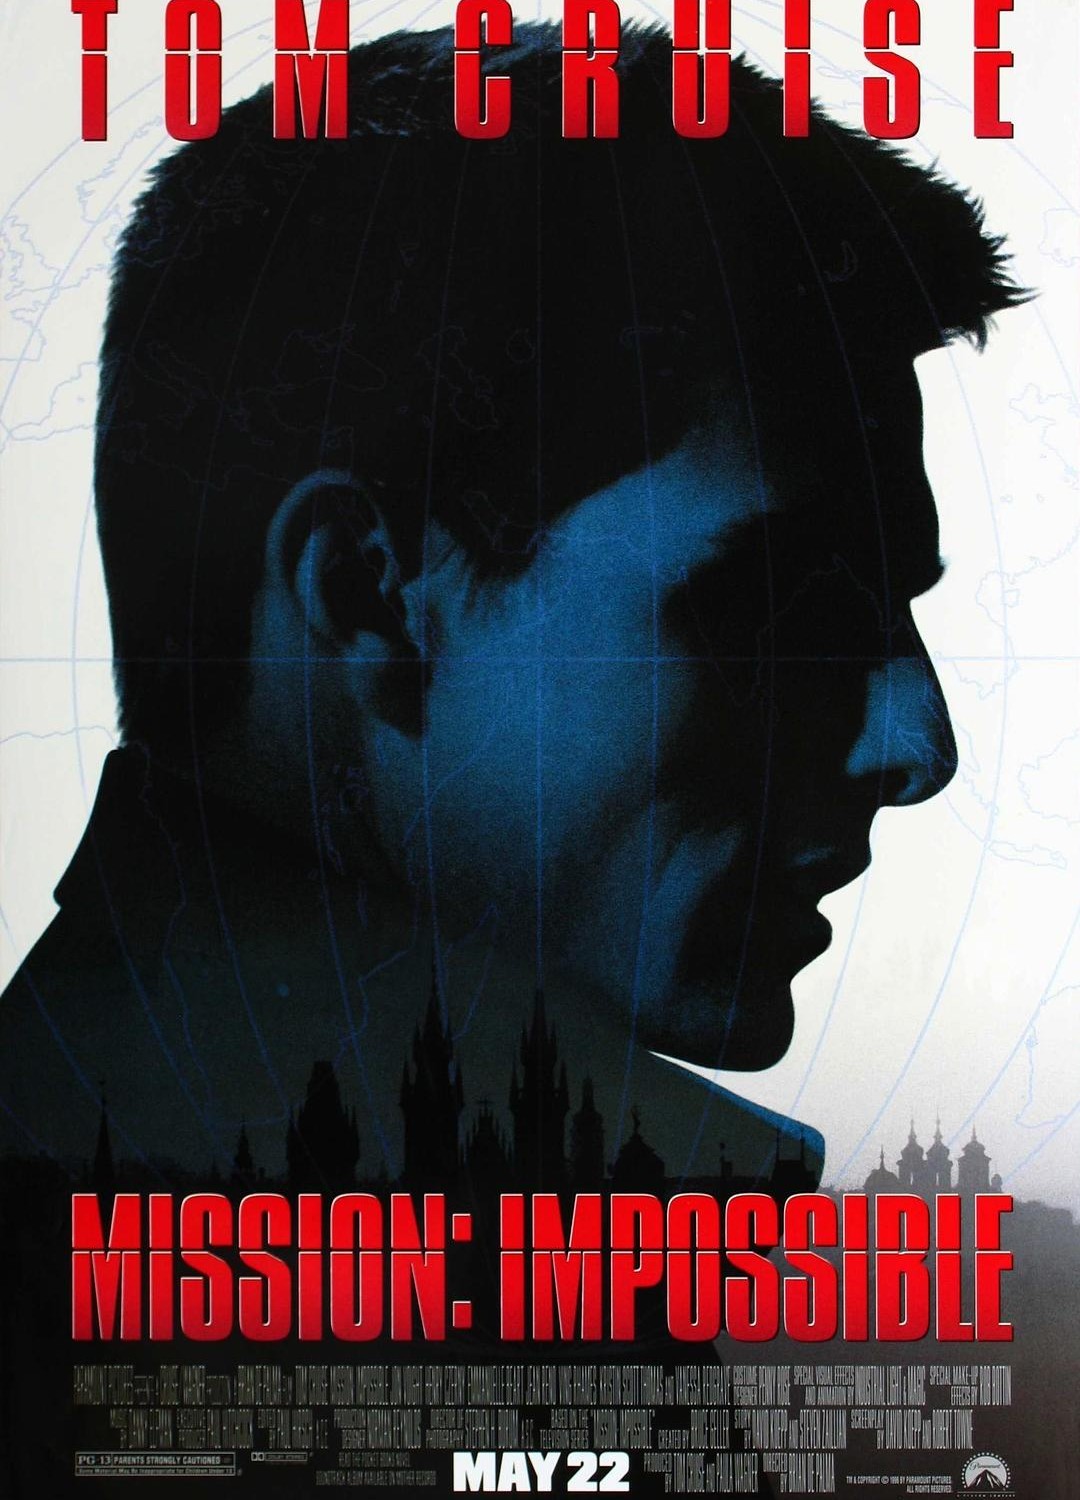 [职业特工队(港) / 不可能的任务(台) / M:I/碟中谍 Mission: Impossible][1996][美国][动作][英语 / 捷克语 / 乌克兰语 / 法语]